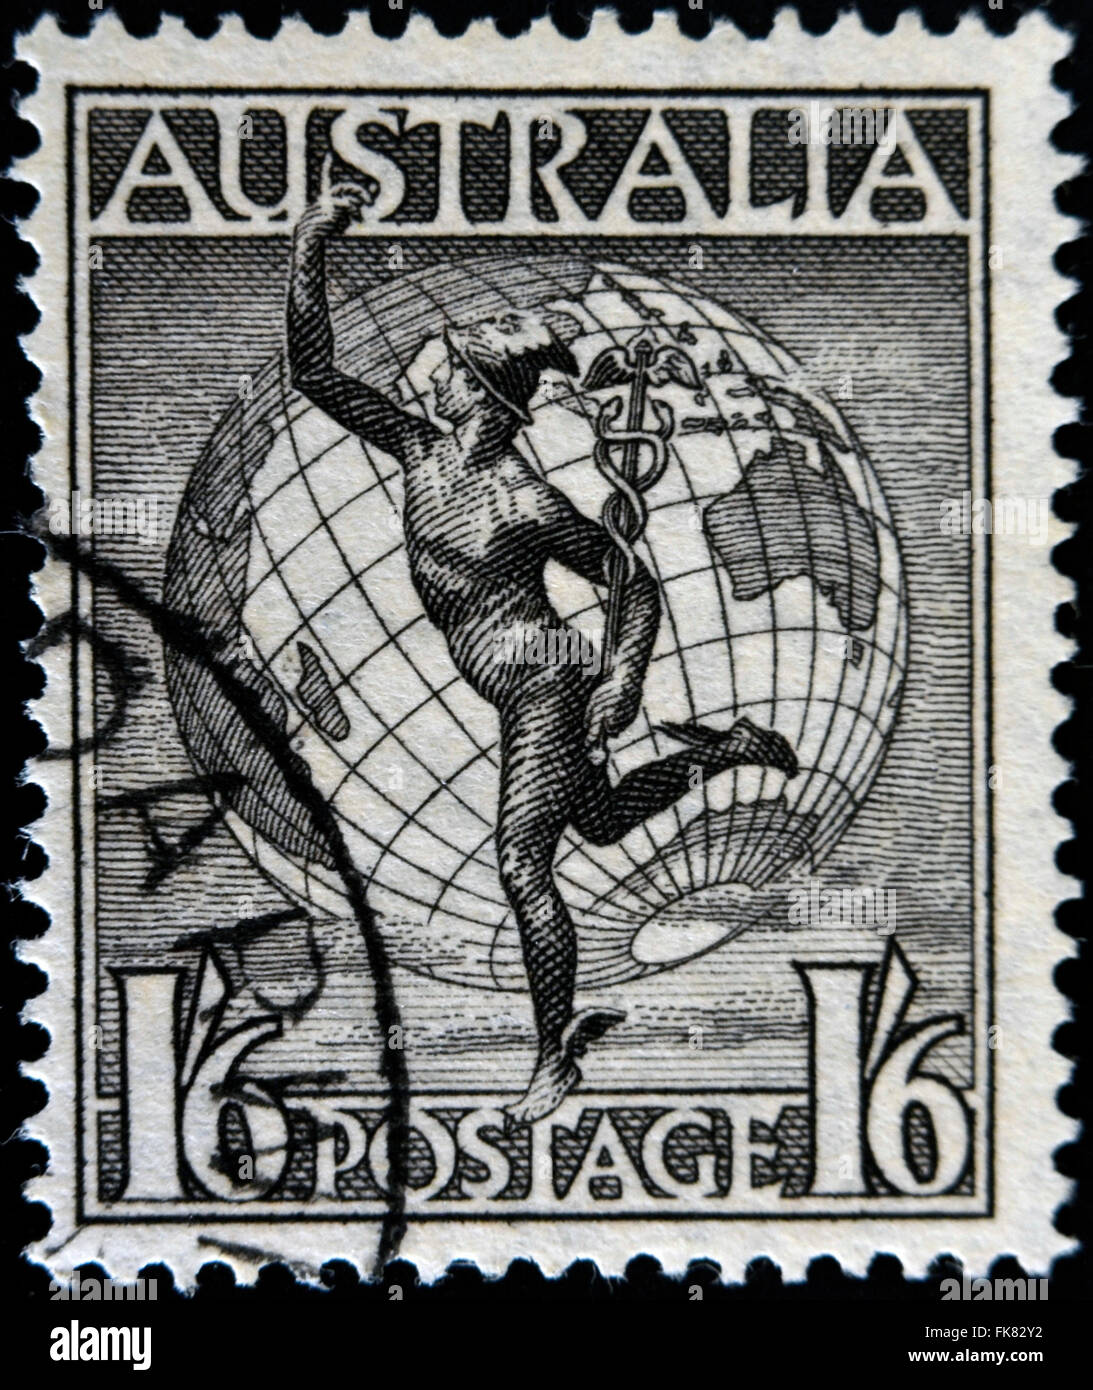 CIRCA 1949-AUSTRALIE : un timbre imprimé en Australie, montre Hermes et le Globe, vers 1949 Banque D'Images